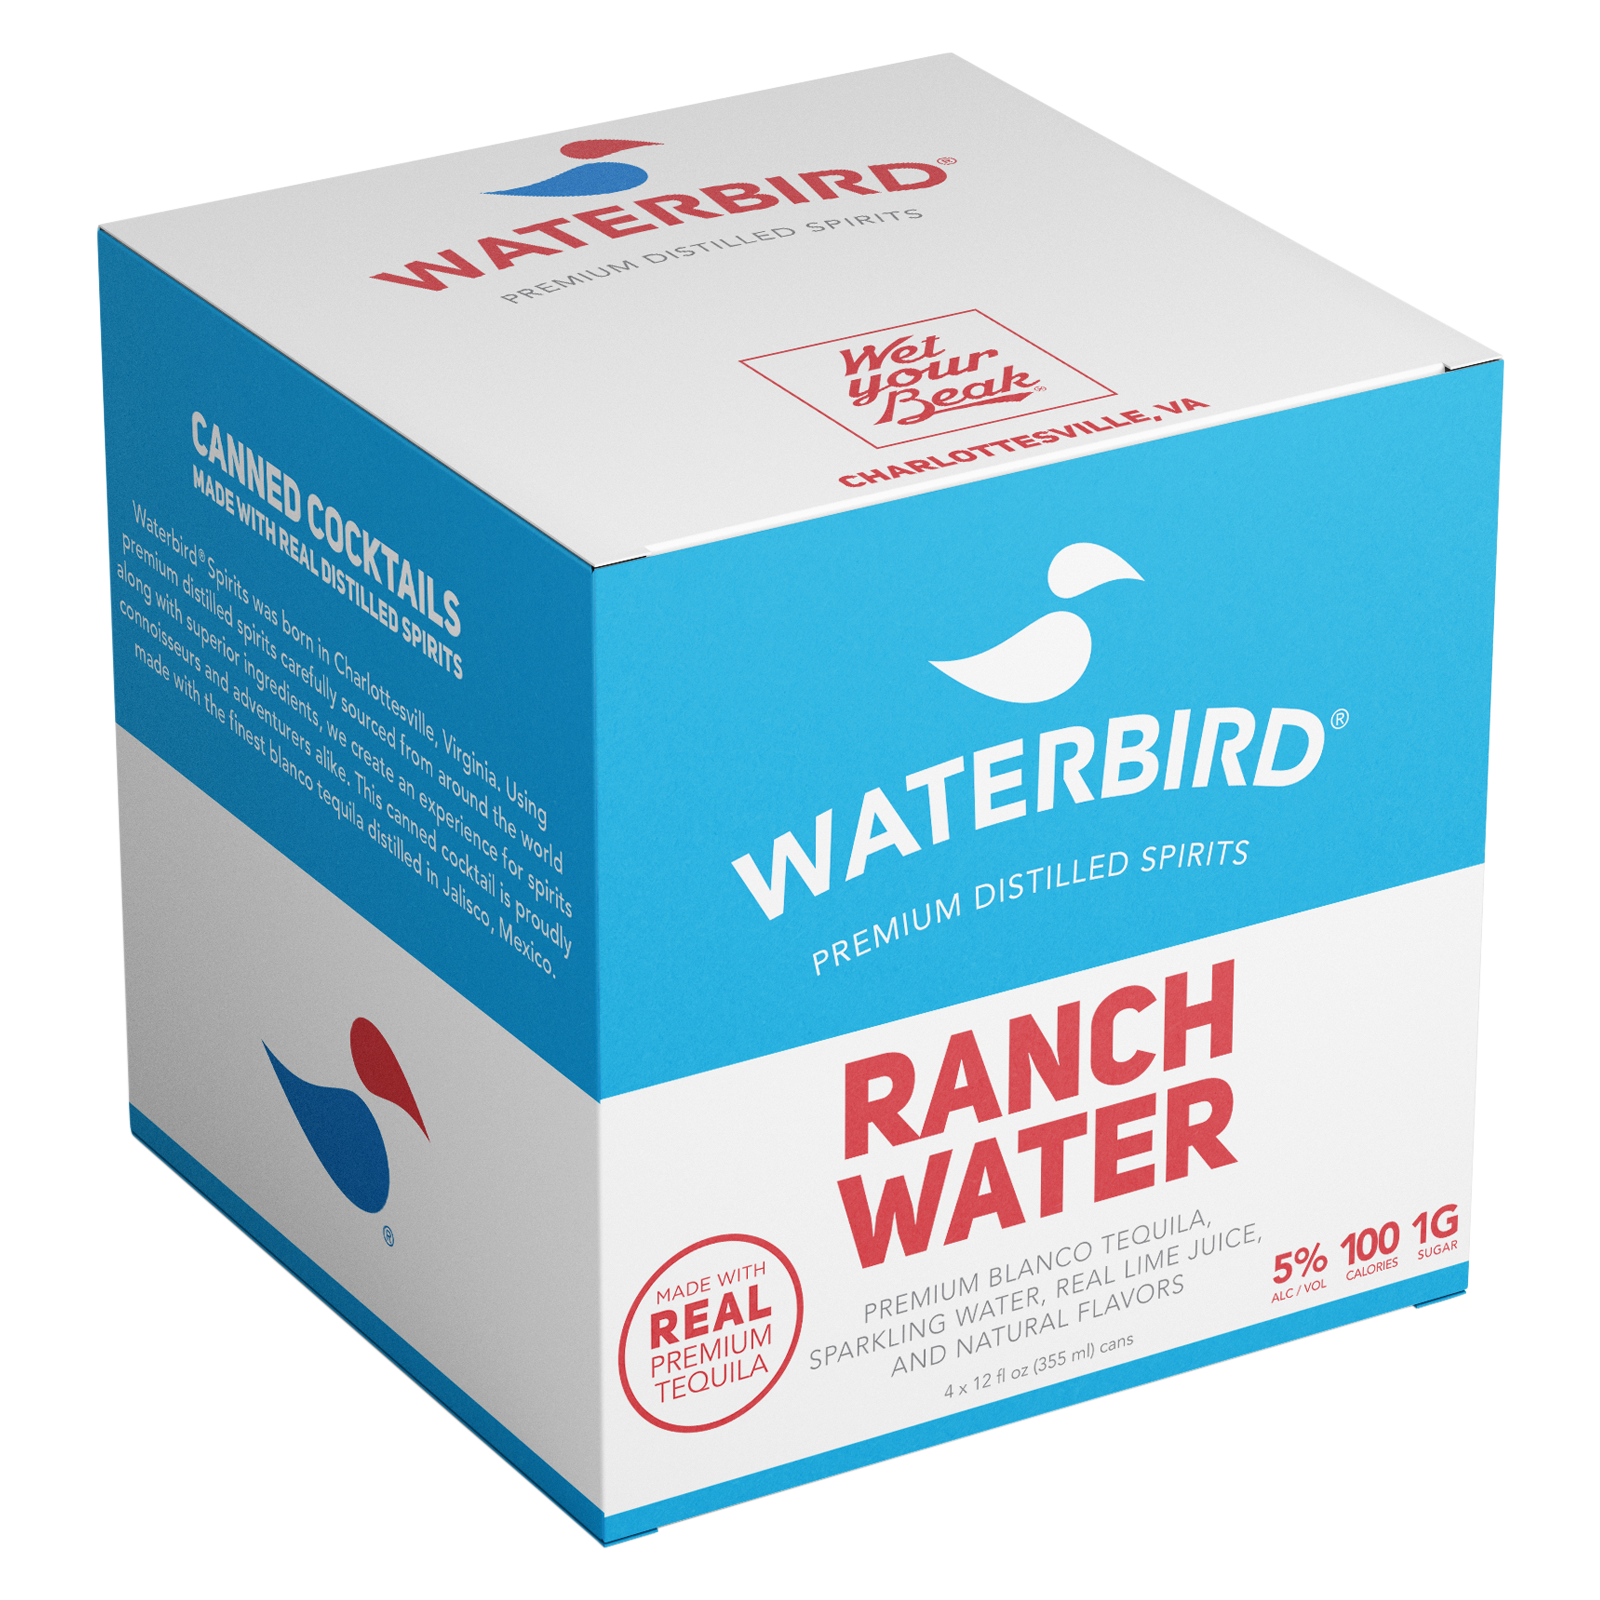 Waterbird Ranchwater 4pk 12oz 5% ABV